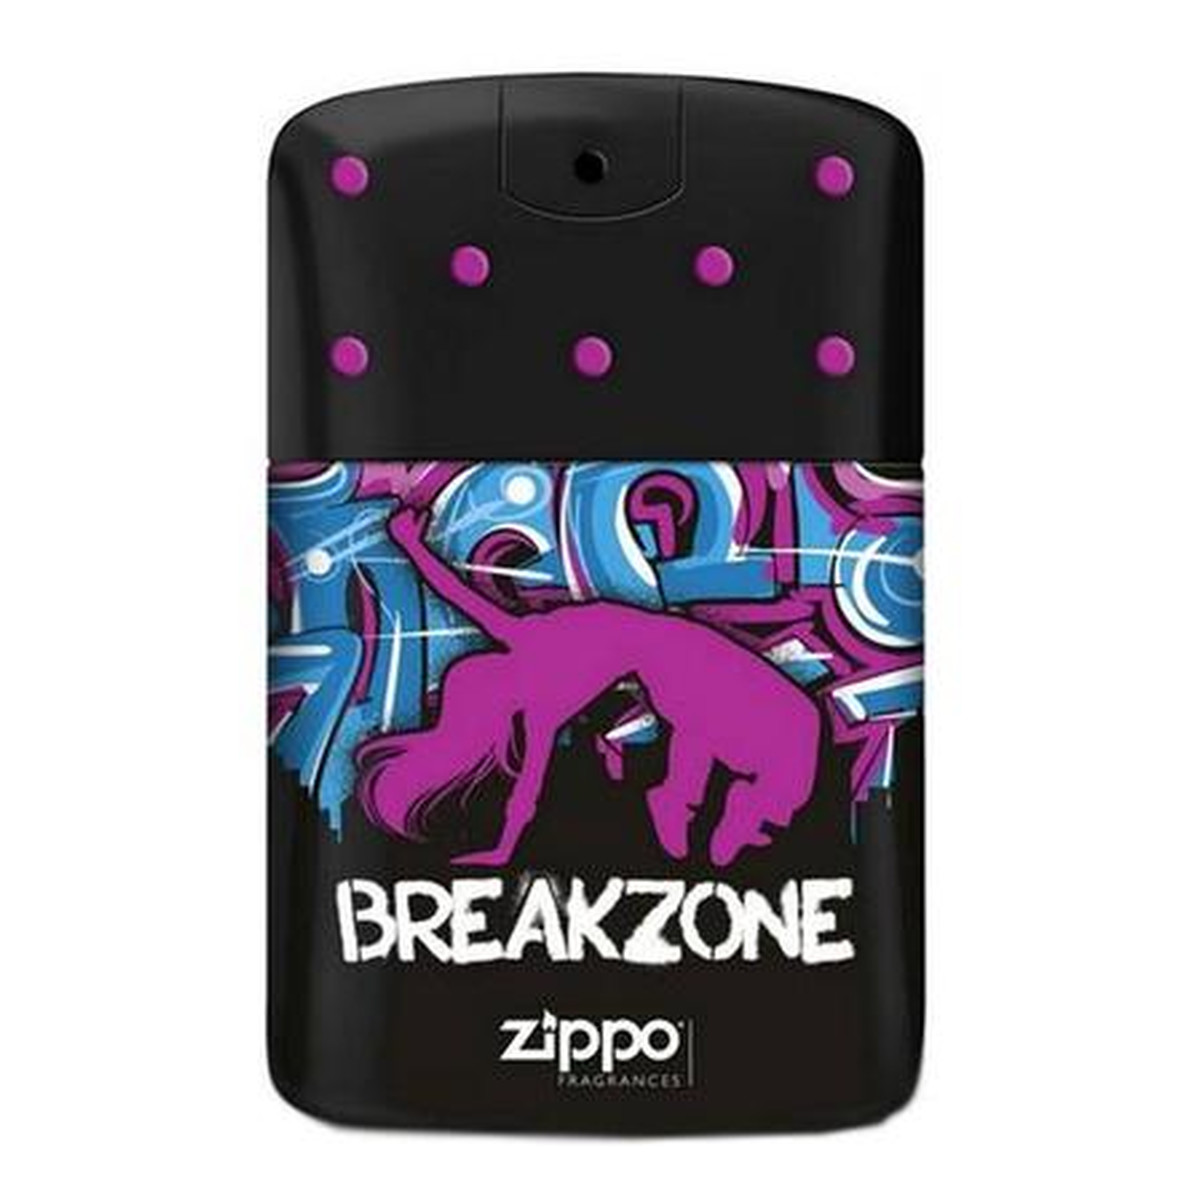 Zippo BreakZone woda toaletowa Tester 75ml